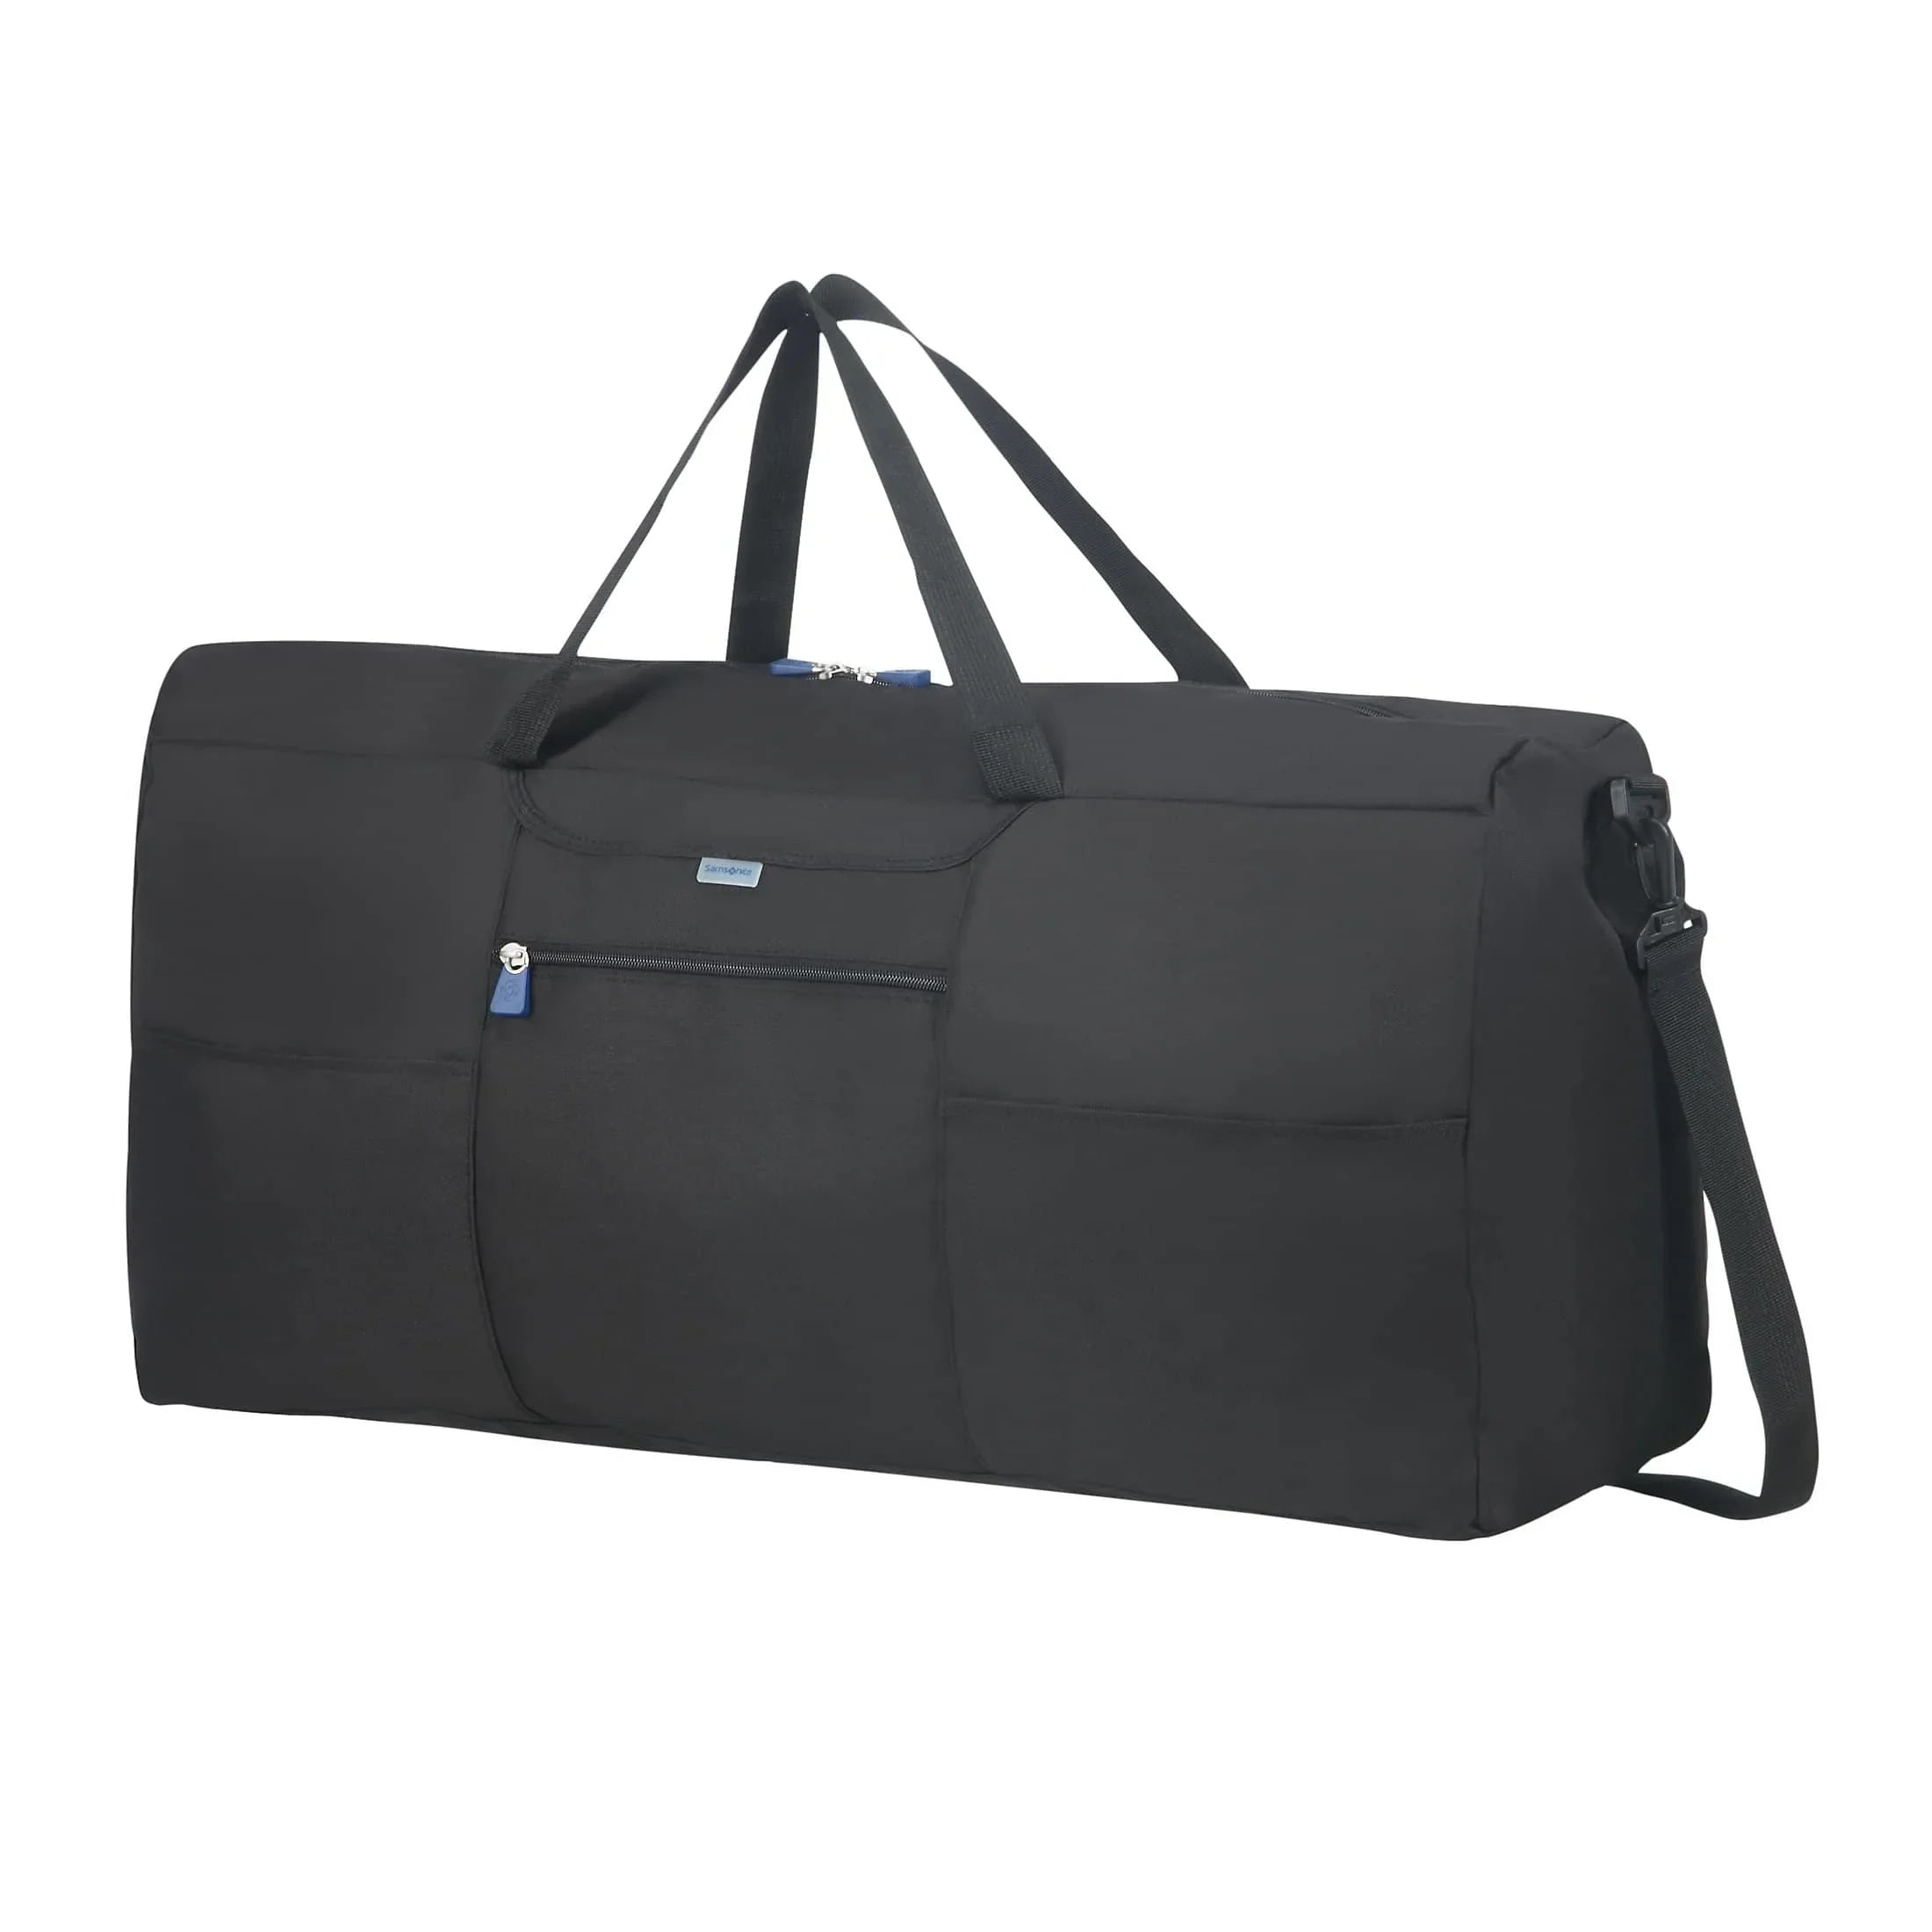 Samsonite Travel Accessories travel bag 70 cm - black